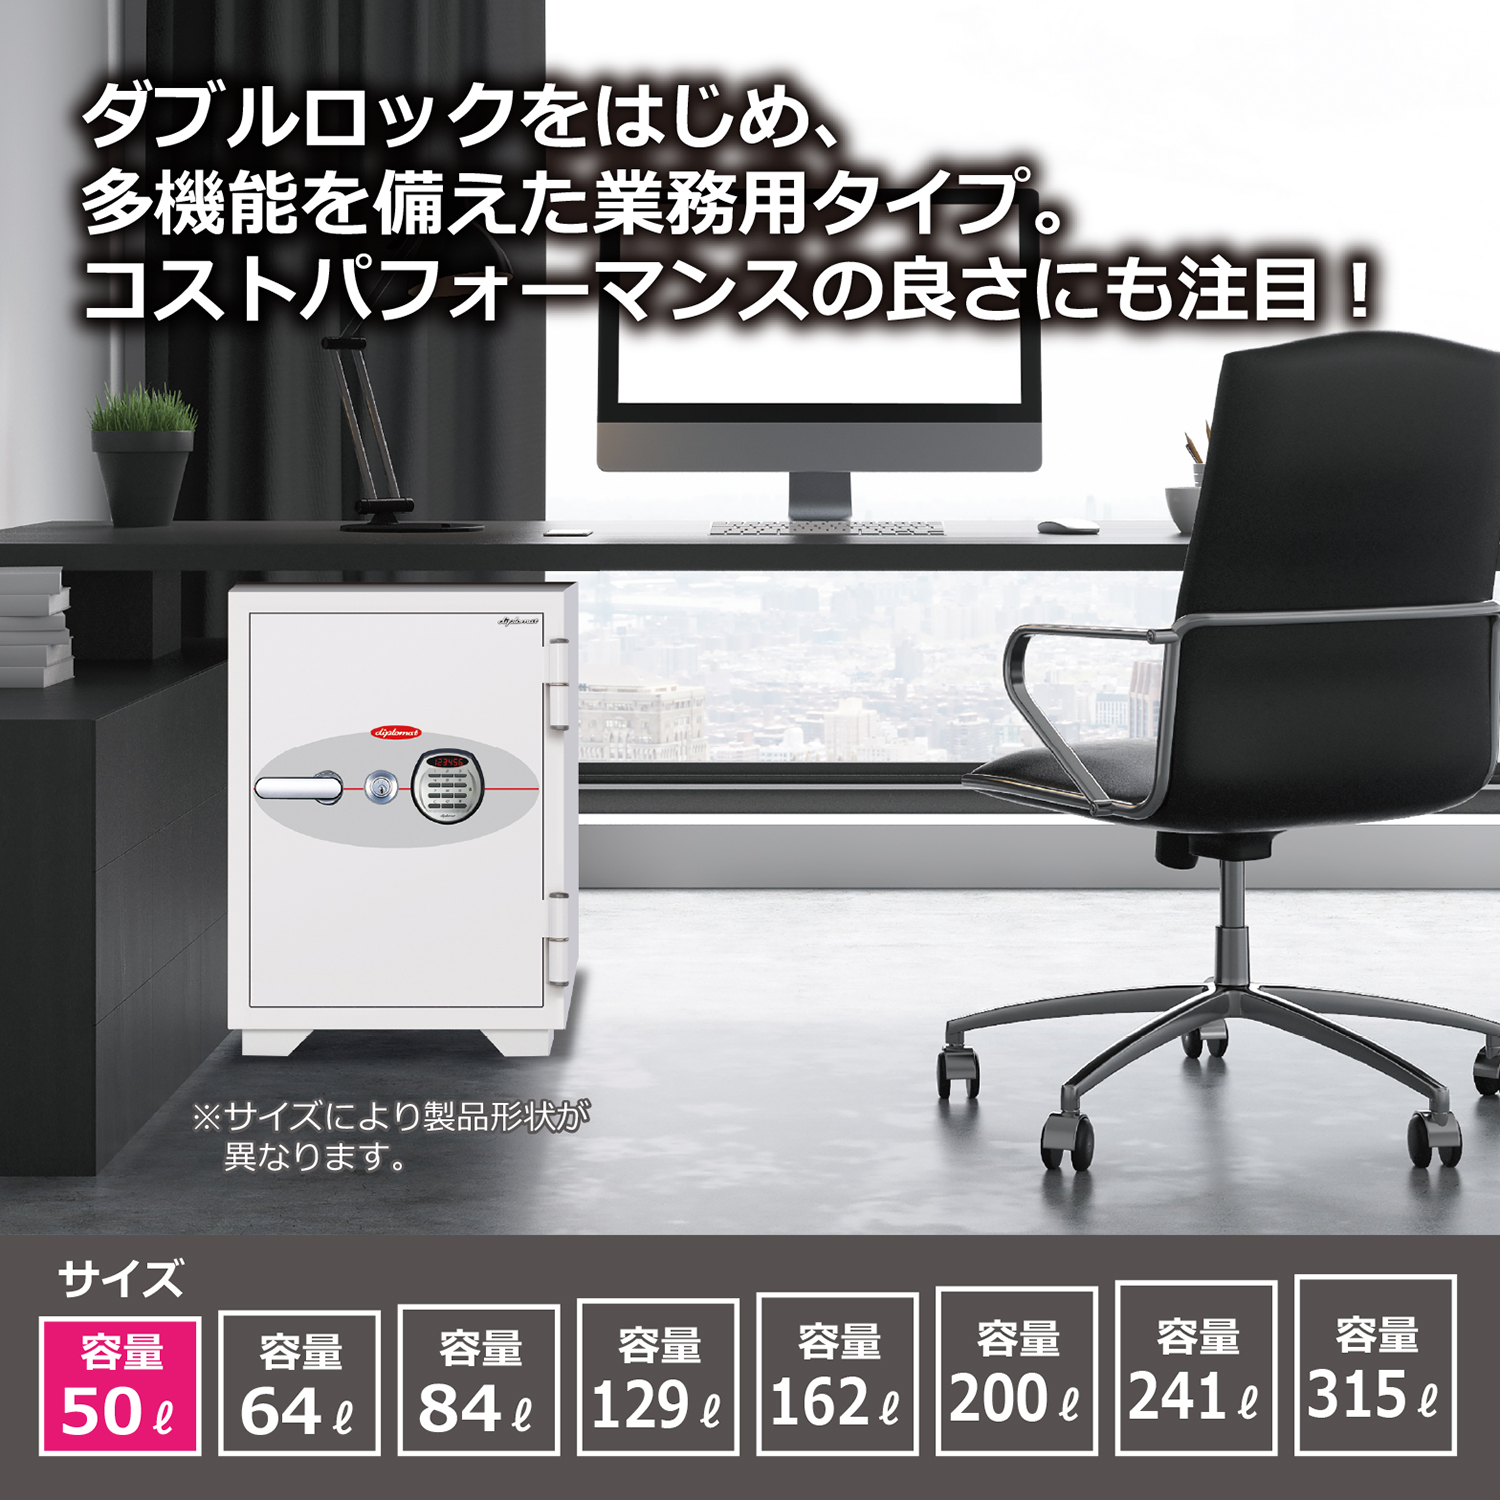 ダブルロック式 オフィス用耐火金庫 50L（W470×D510×H660）